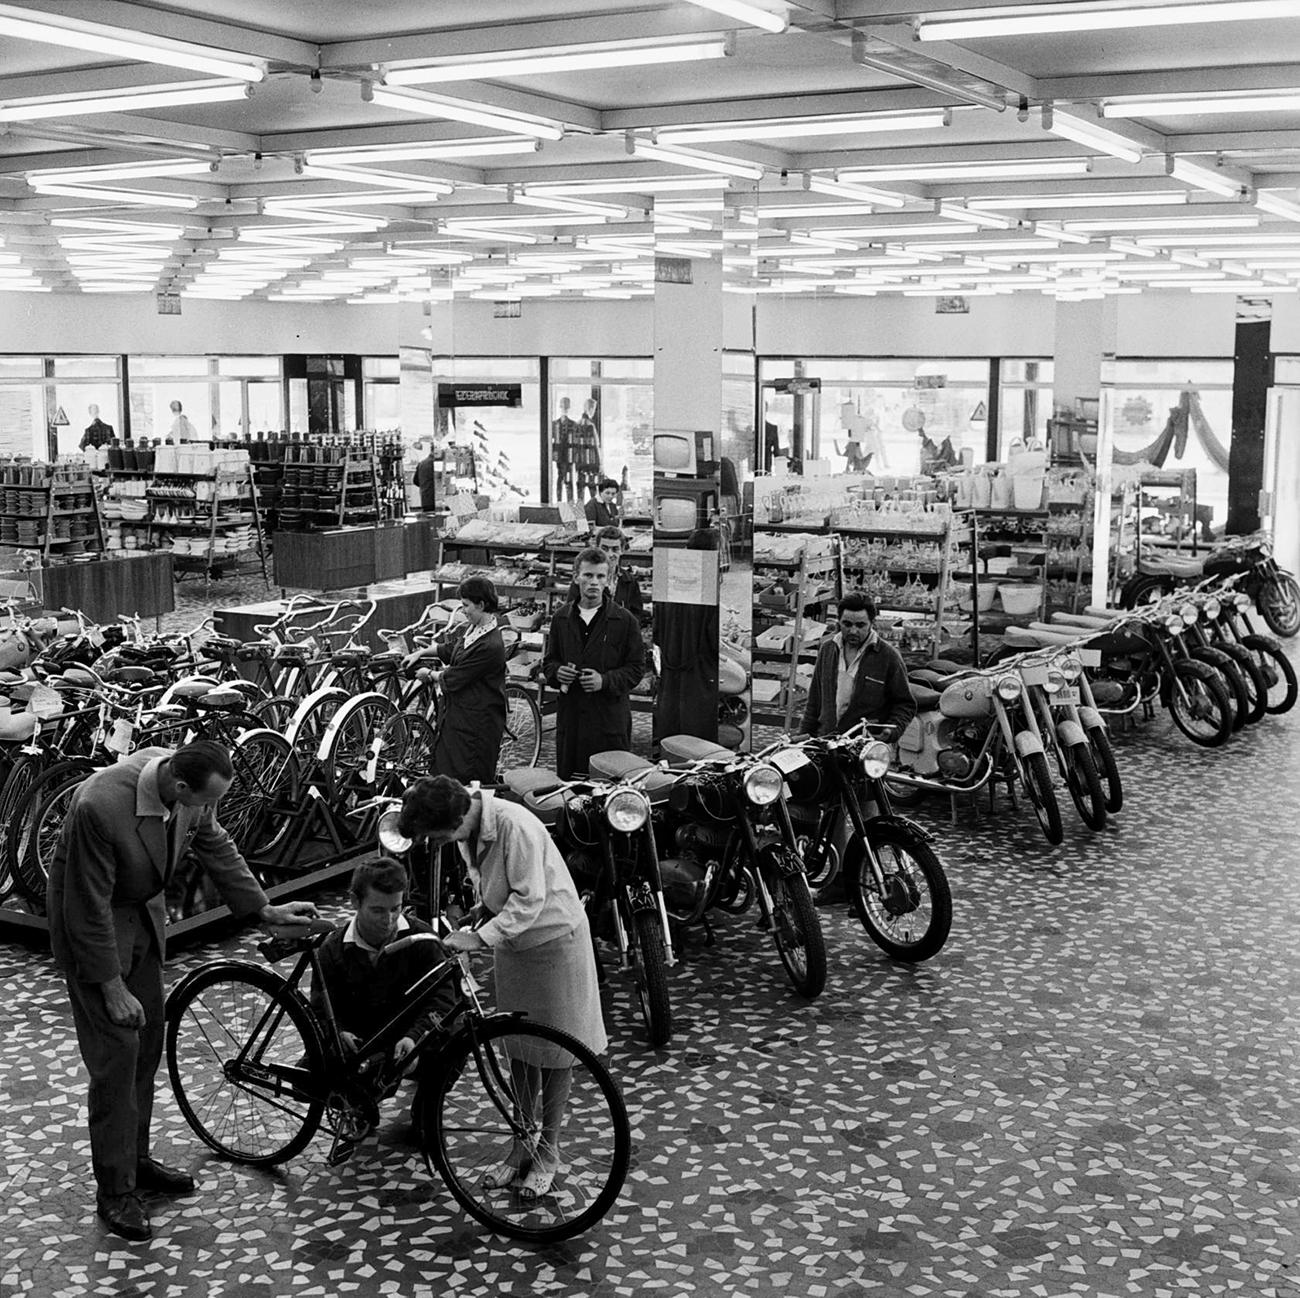   A 60-as évek közepén a motorkerékpár nagyjából ugyanazt jelentette a családoknak, amit ma egy Suzuki. Megkönnyítette a munkába járást, a hétvégeken lehetett bütykölni, pózolni vele a templom melletti főtéren vagy a kultúrház előtt. De fel is lehete